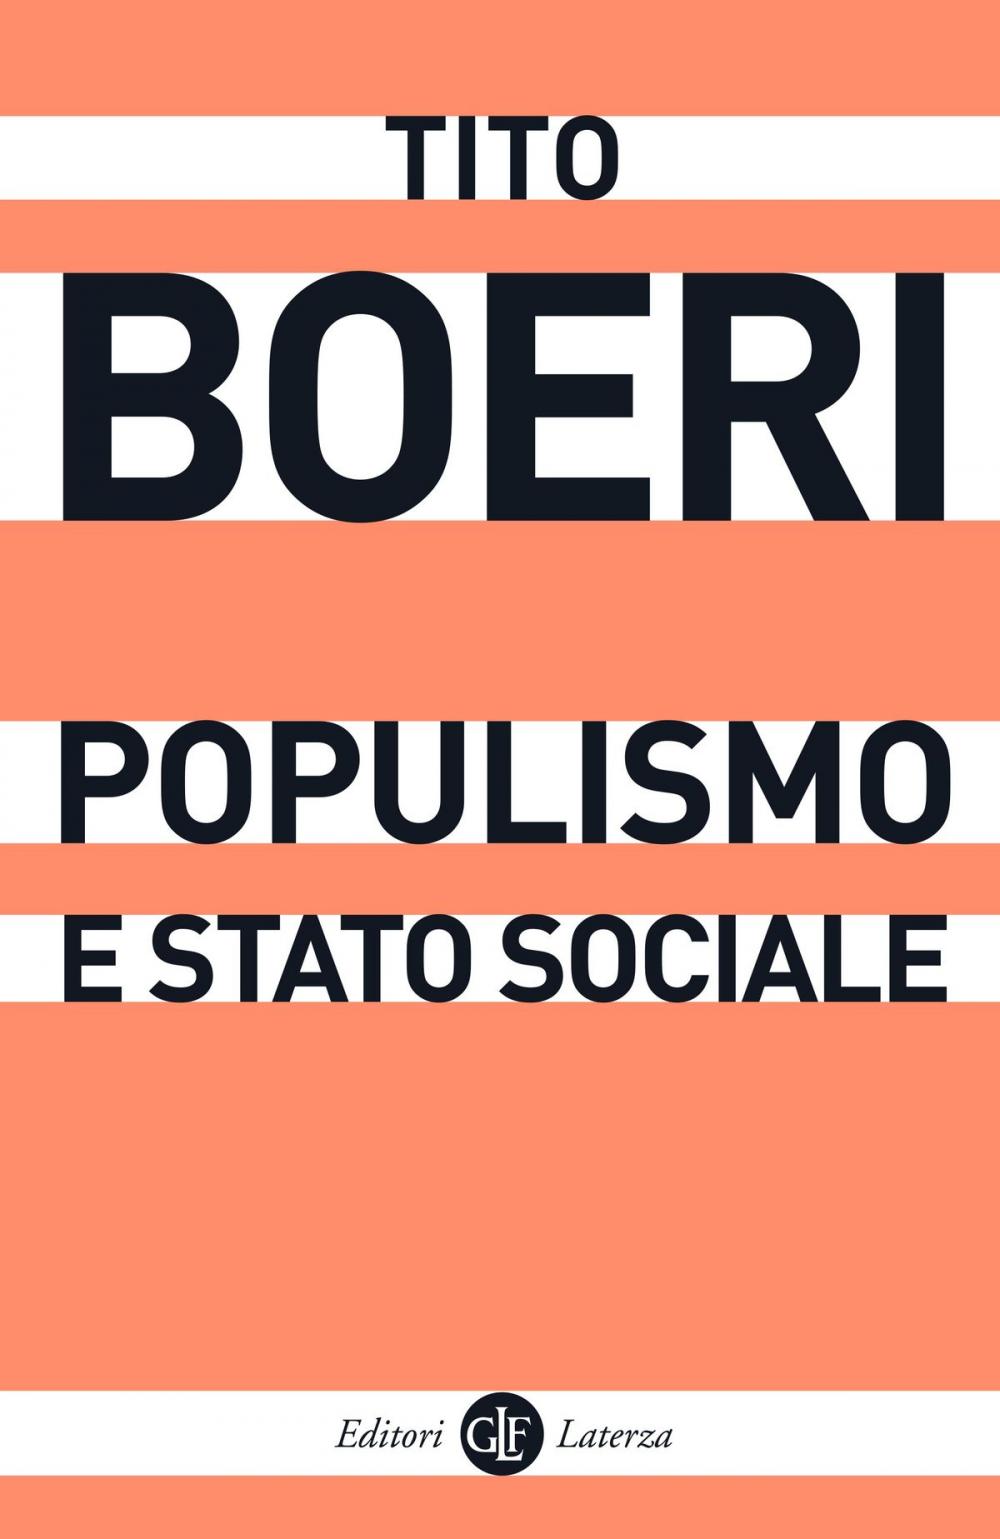 Big bigCover of Populismo e stato sociale